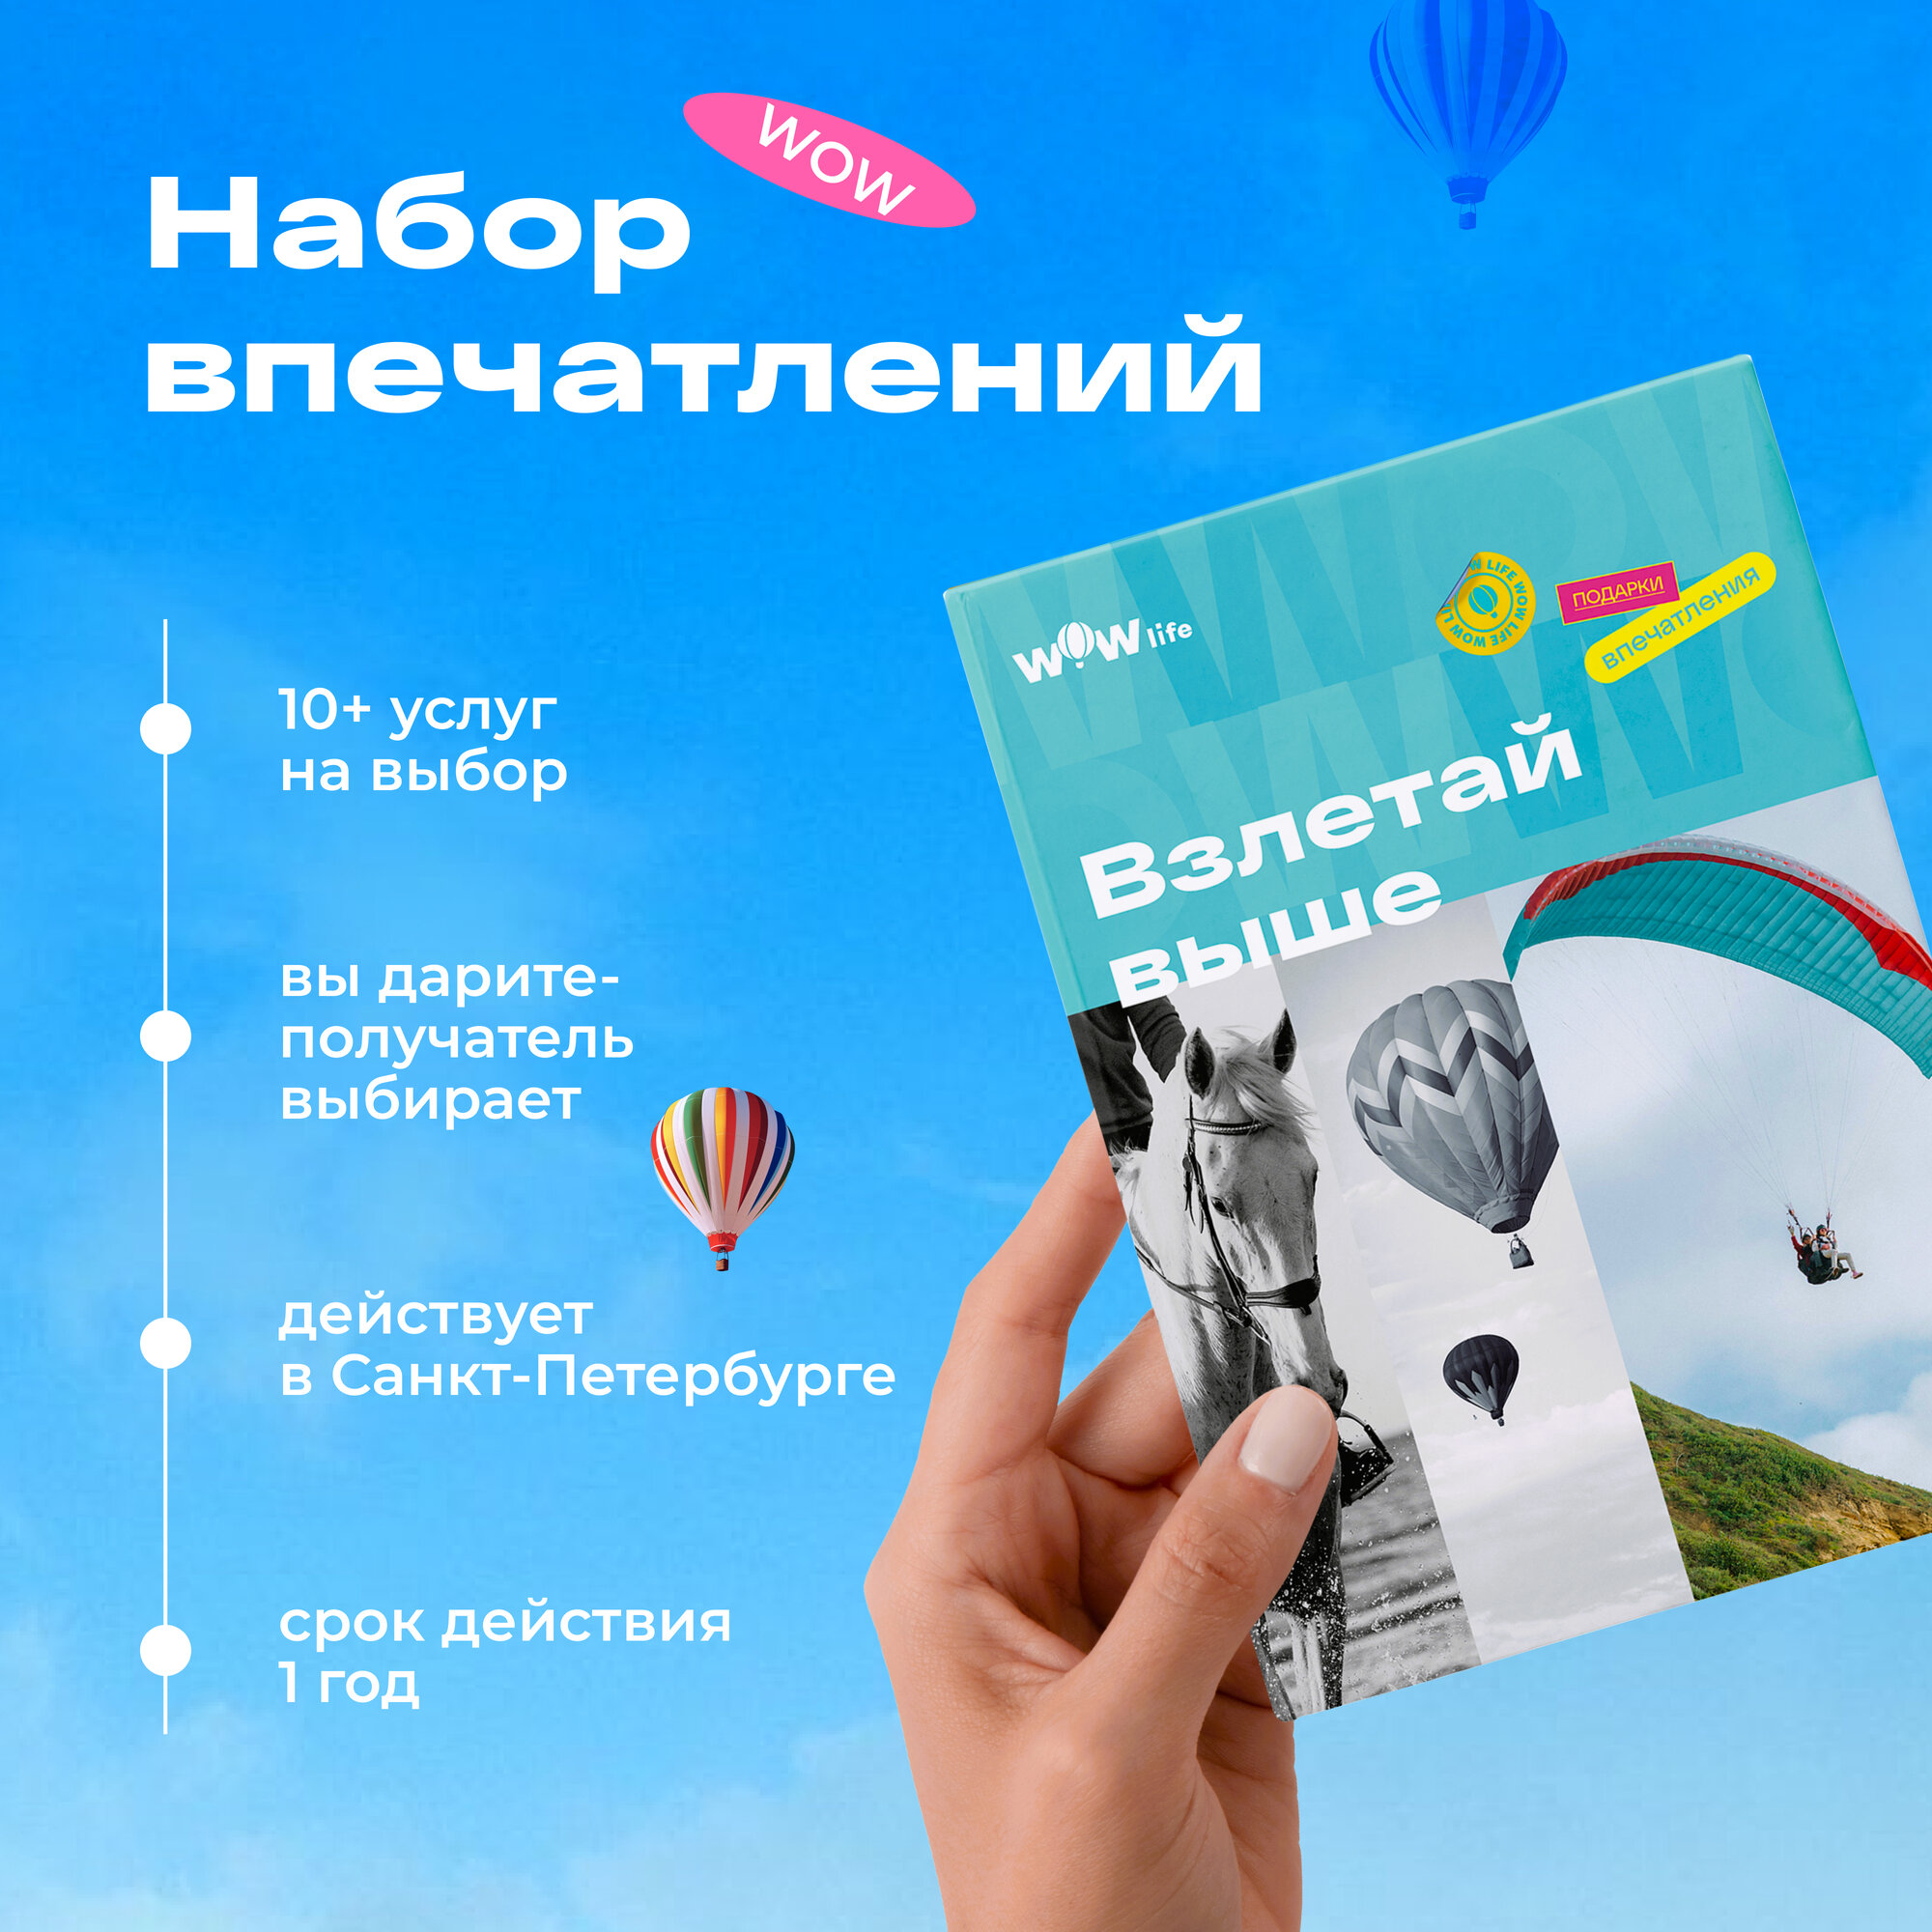 Подарочный сертификат WOWlife "Взлетай выше" - набор из впечатлений на выбор, Санкт-Петербург